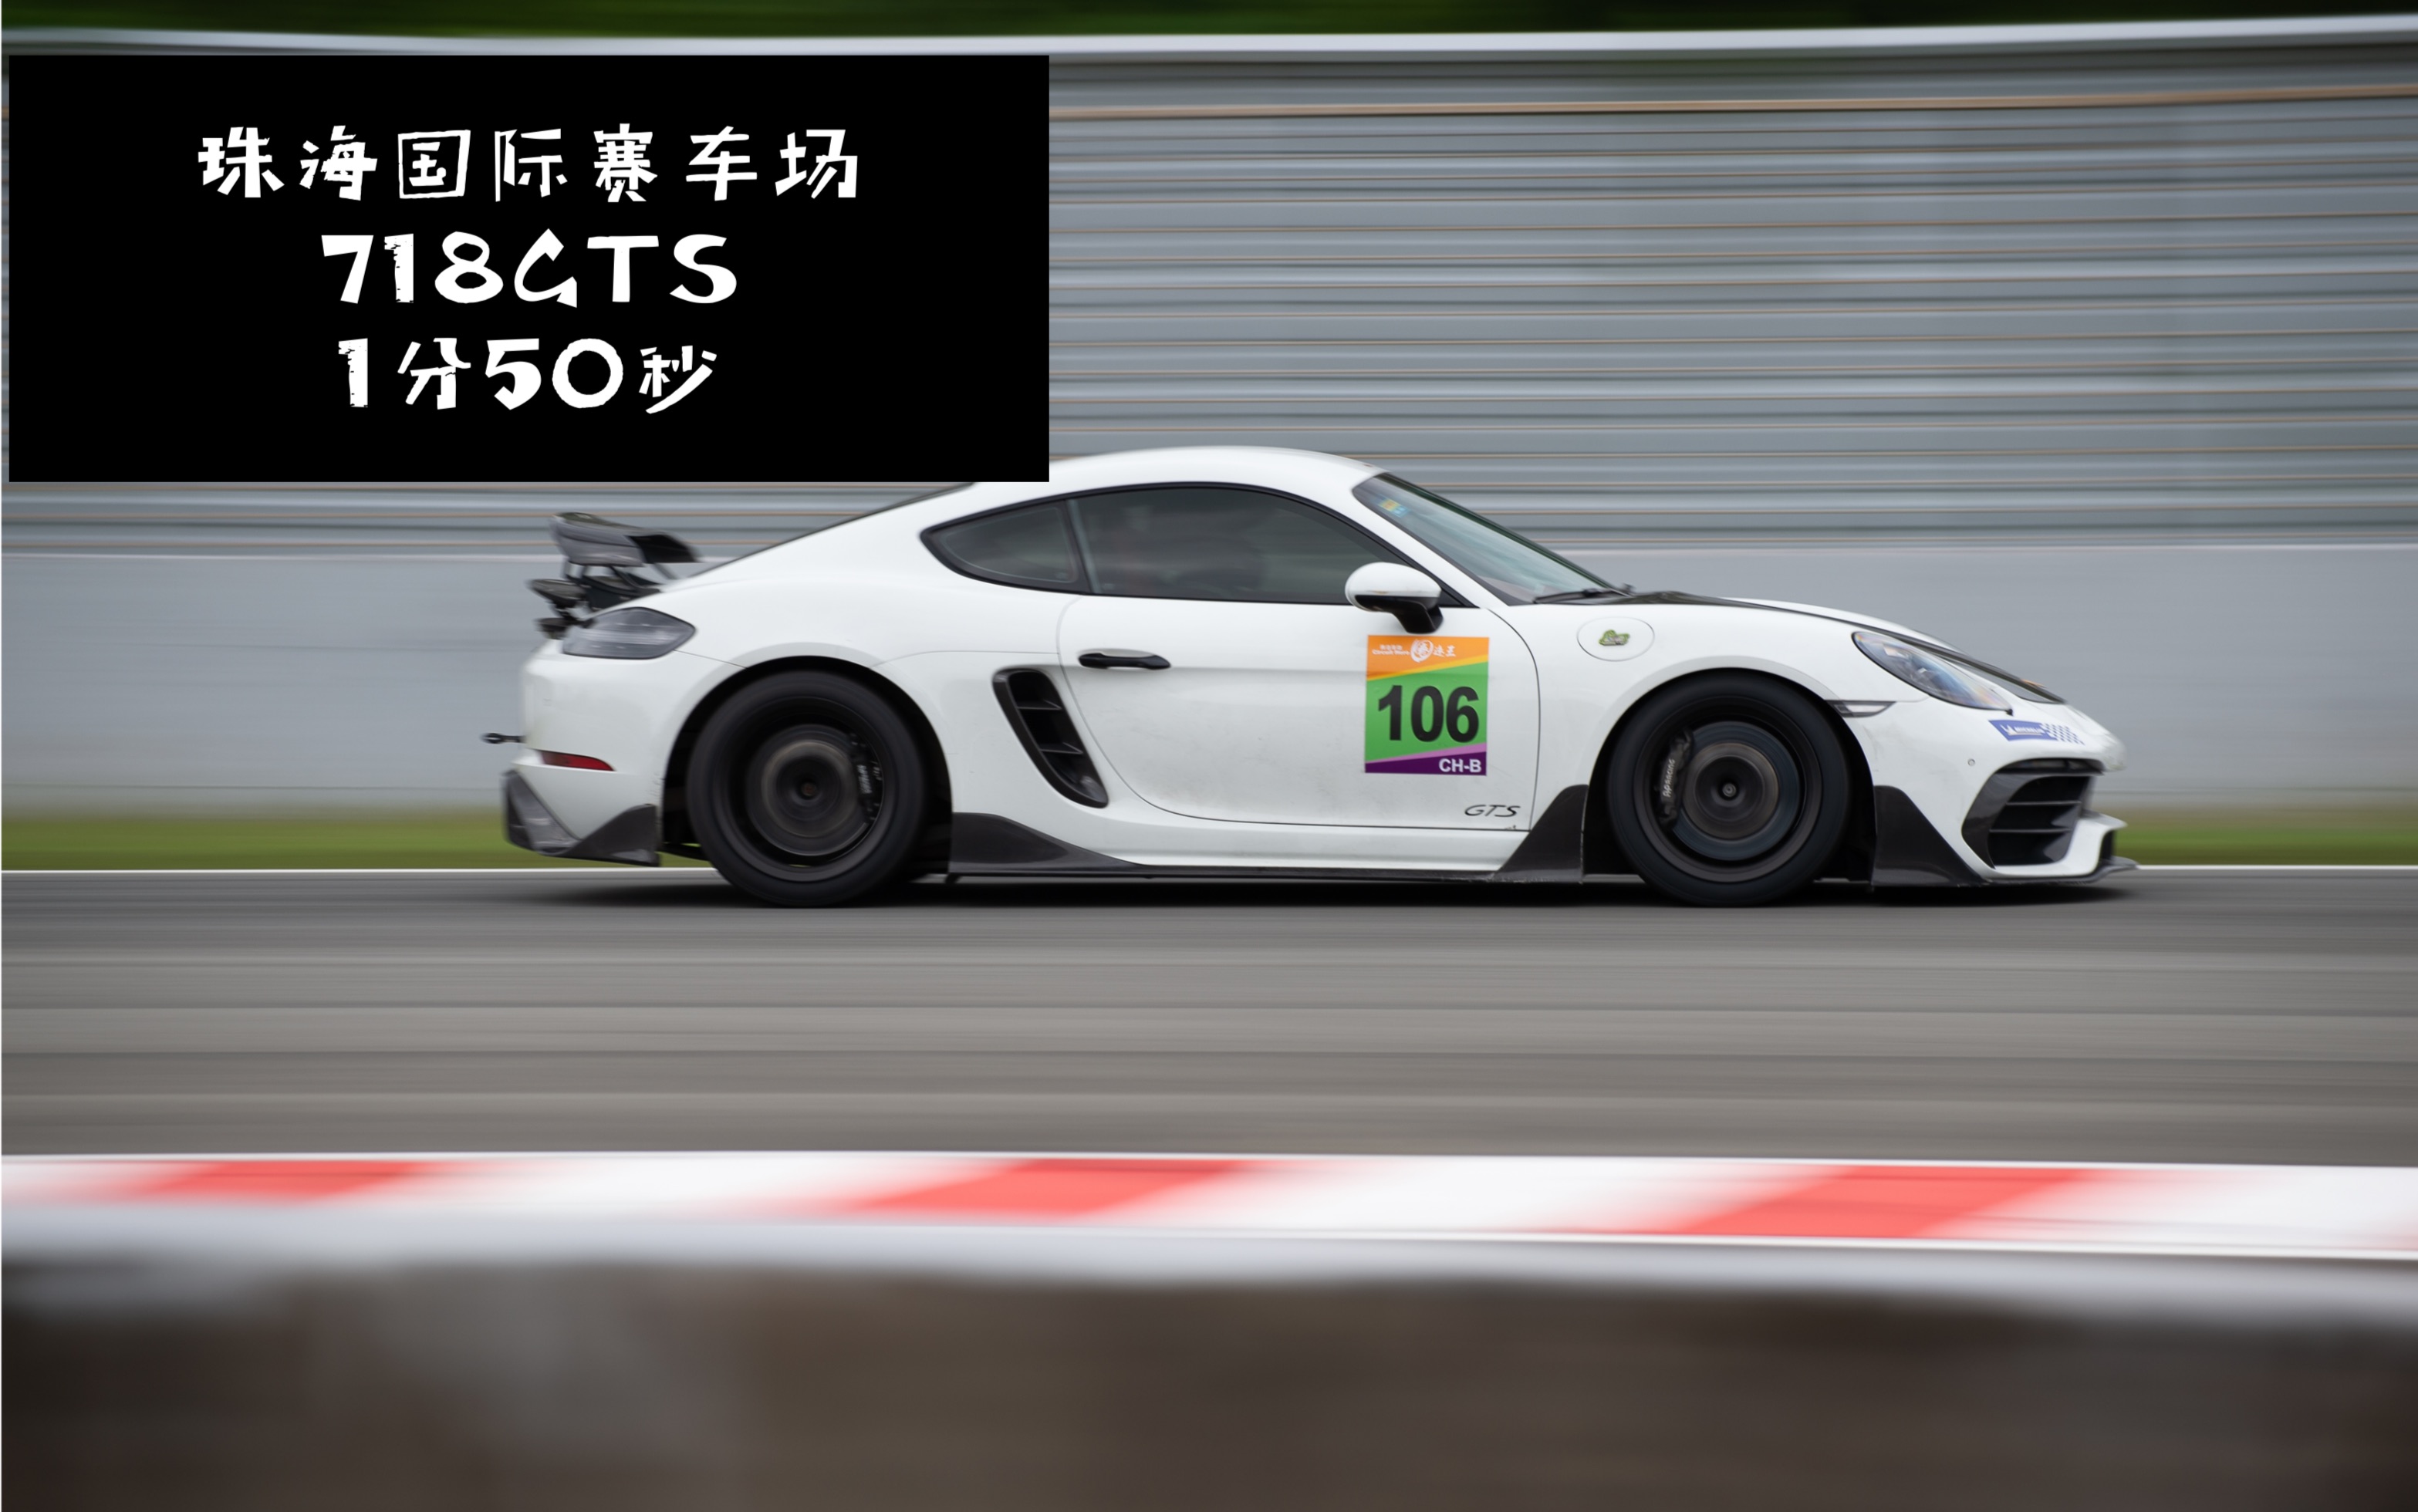 珠海国际赛车场，圈速王决赛。718GTS车载1分50秒圈速视频。